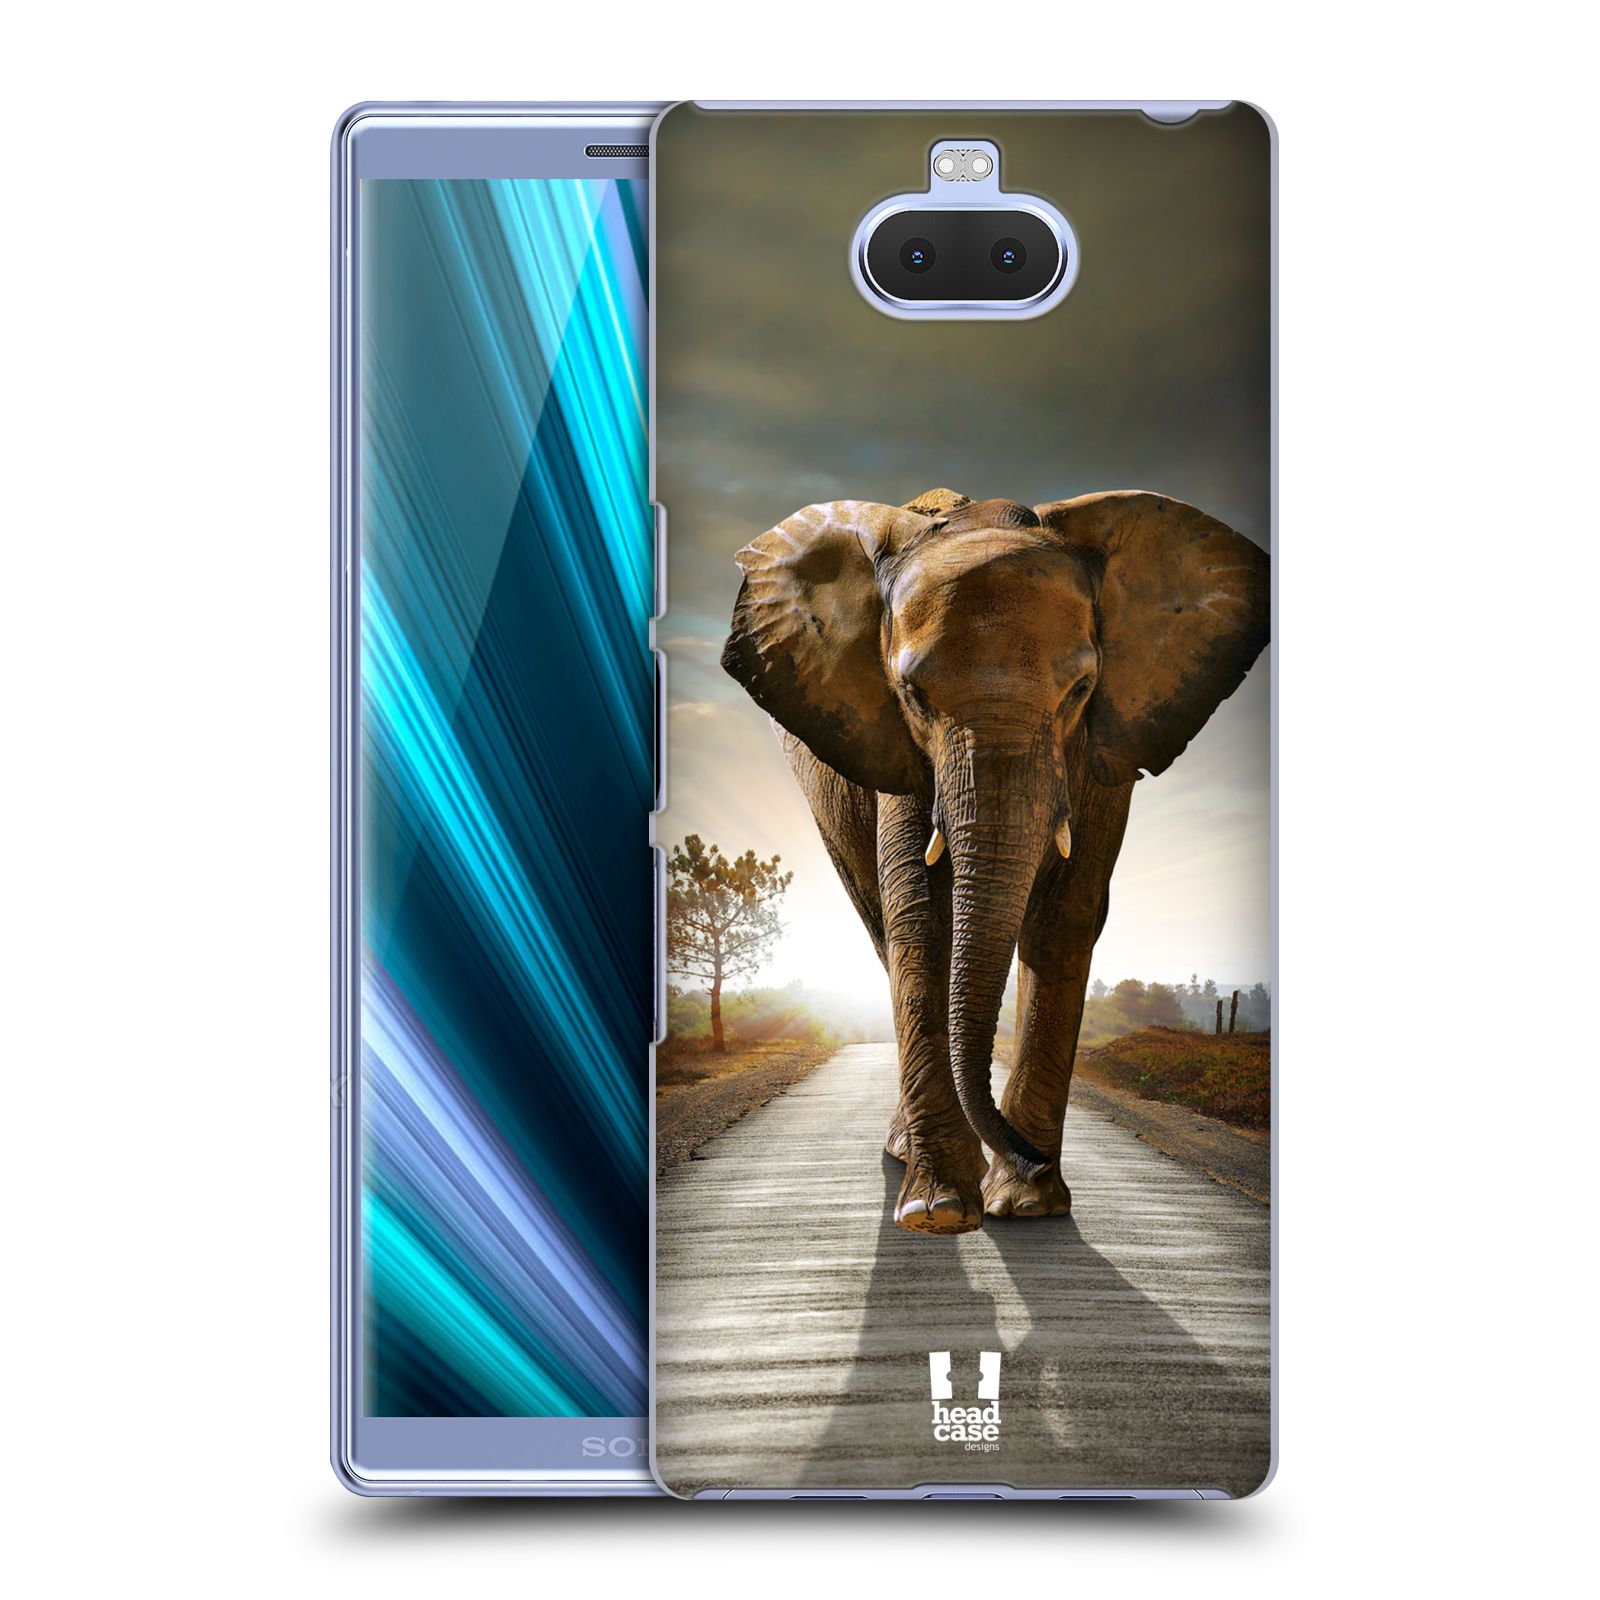 Zadní obal pro mobil Sony Xperia 10 - HEAD CASE - Svět zvířat kráčející slon